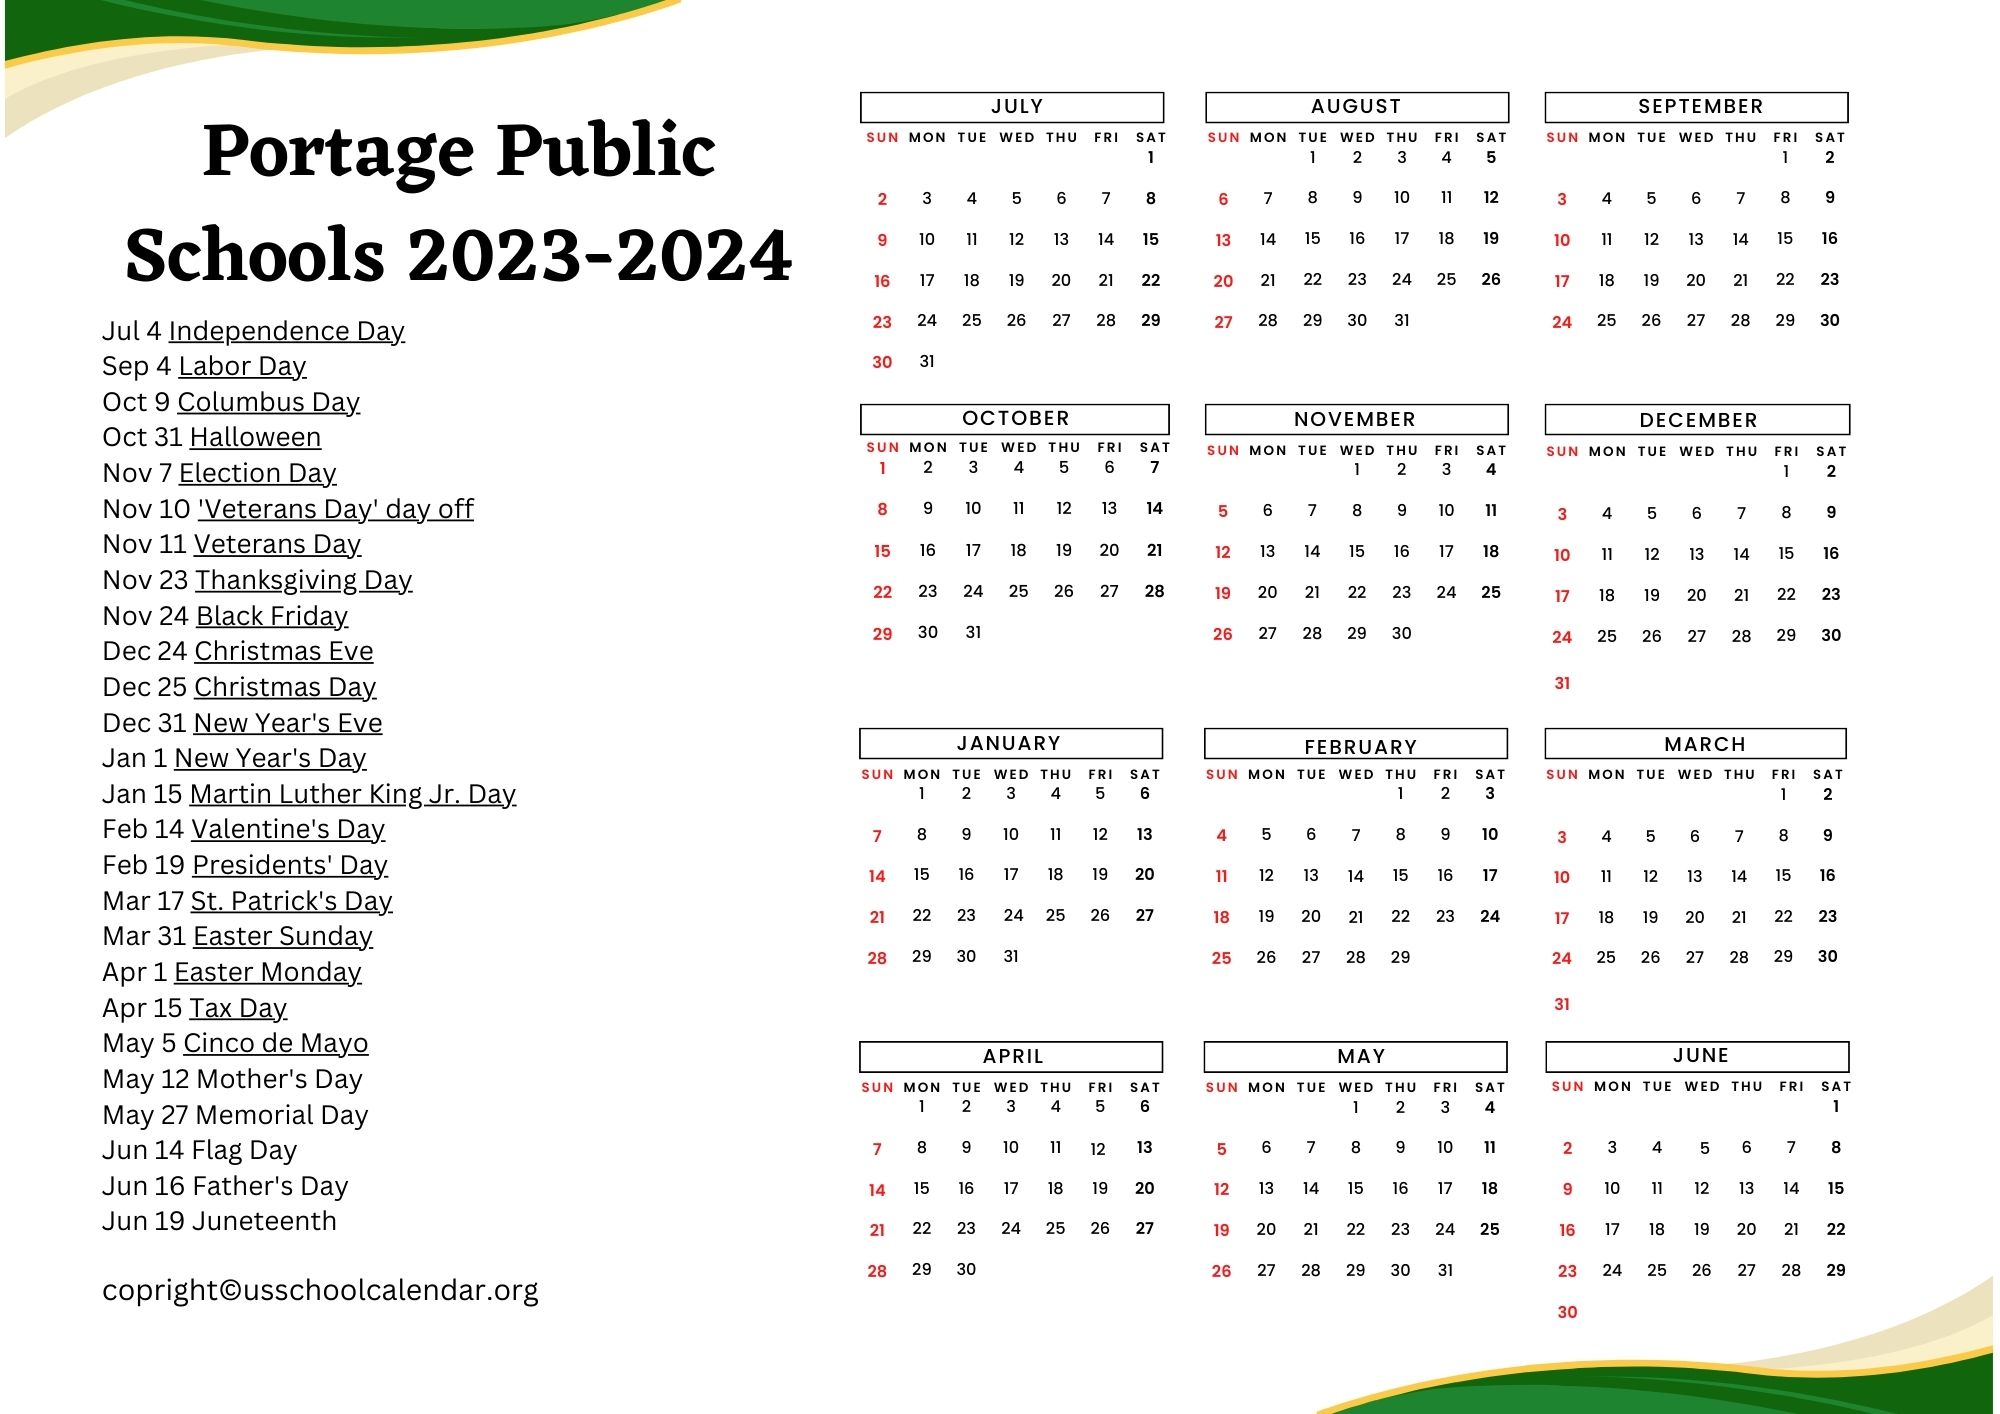 Portage Public Schools Calendar with Holidays 20232024